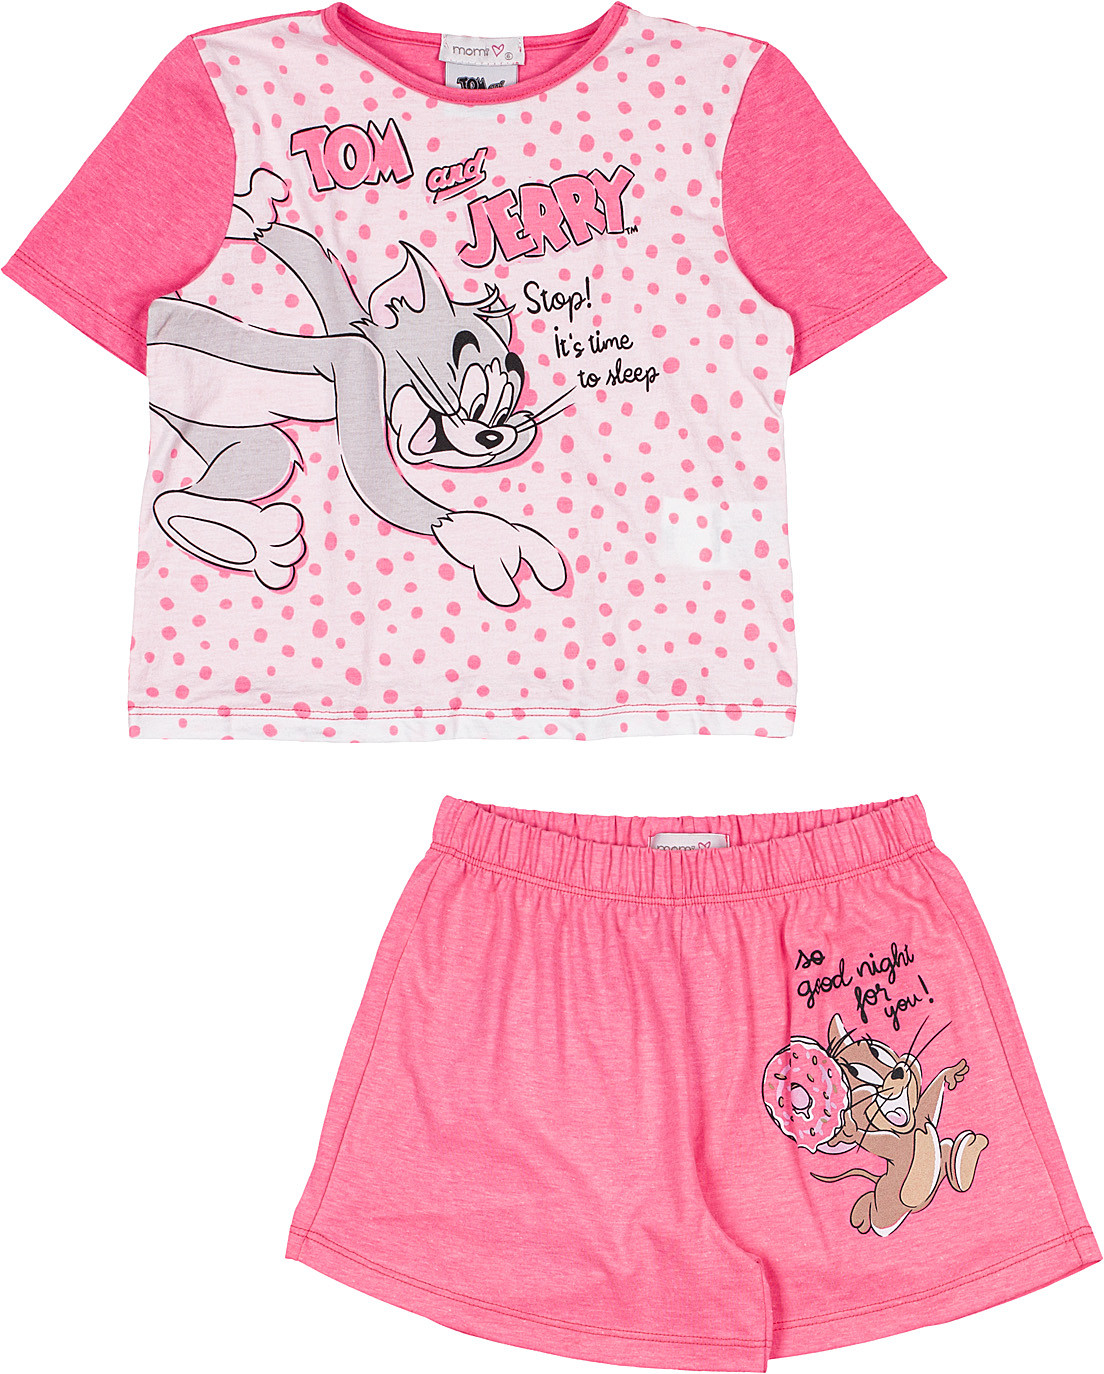 Pijama Curto Tom e Jerry H3090 - Momi